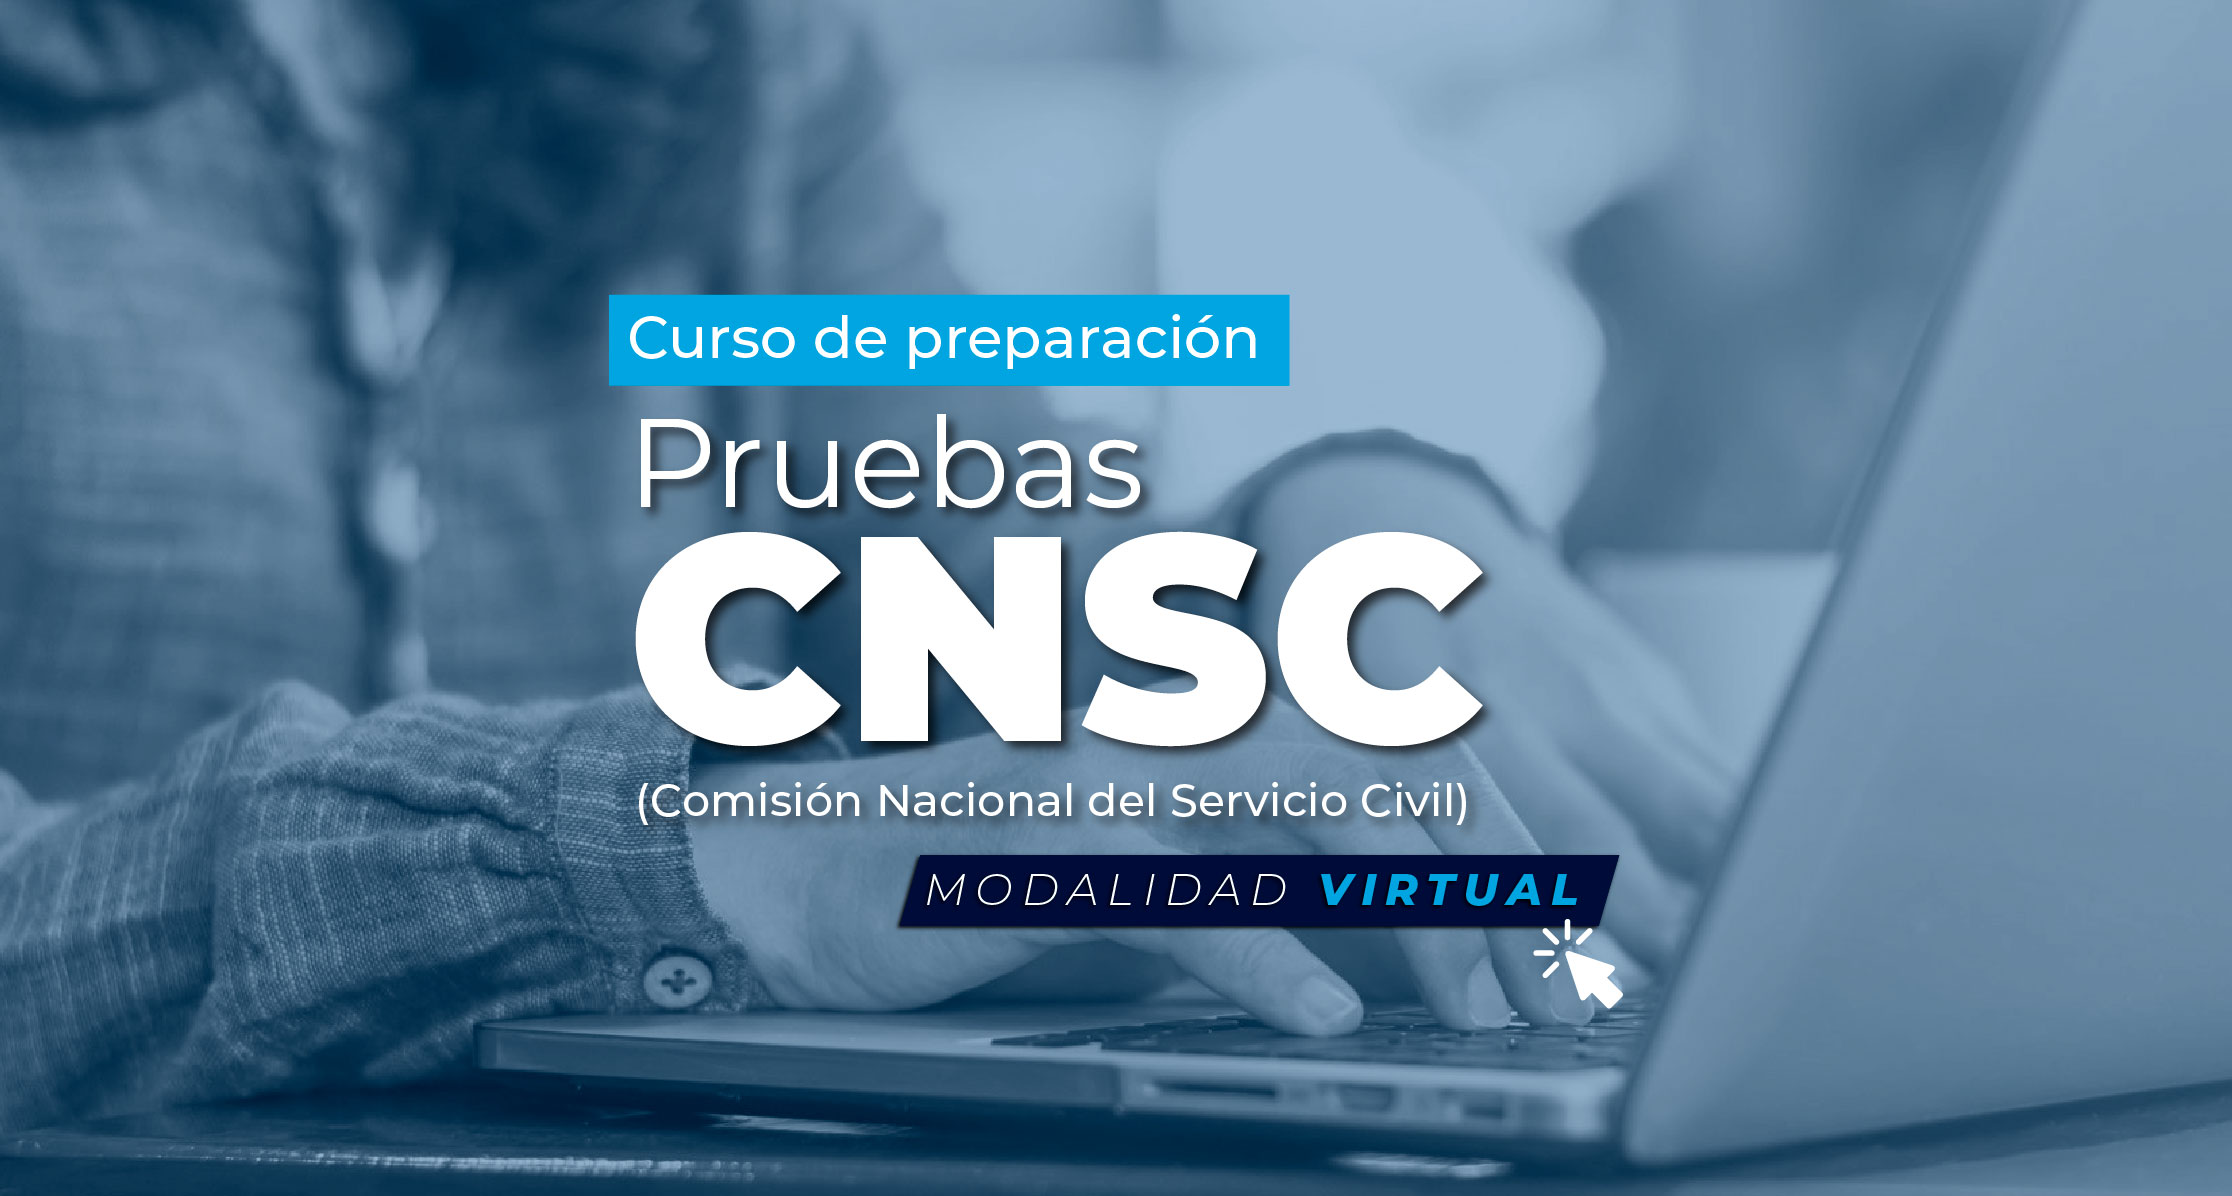 www.simo.cnsc.gov.co: La plataforma virtual de la CNSC